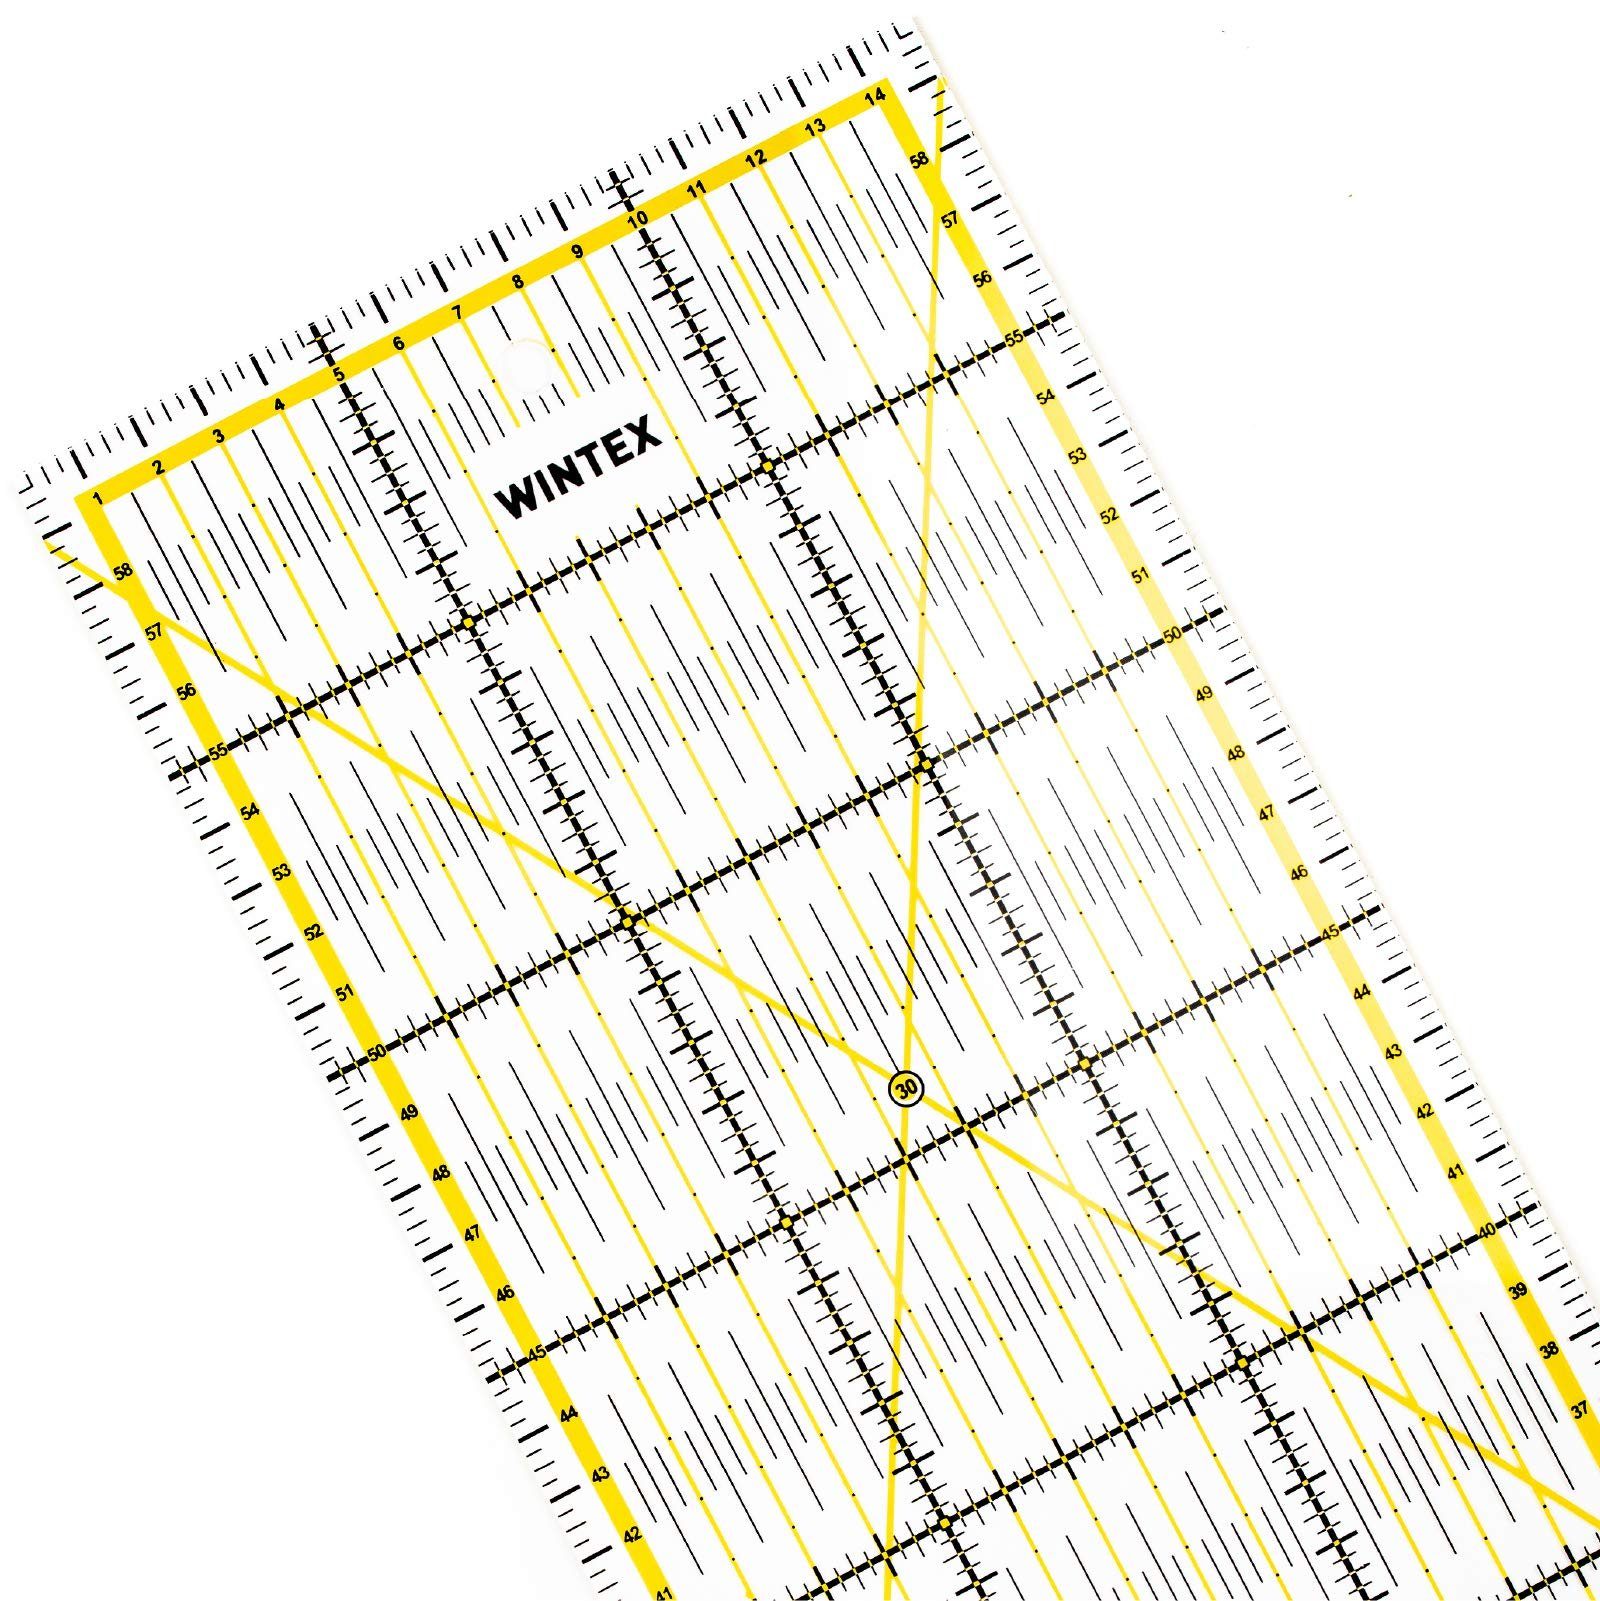 WINTEX Schneidelineal Patchwork Fliesen 15x60 cm mit Raster und Winkelanzeige, Patchwork Lineal 15x60 cm mit cmRaster und Winkelanzeige